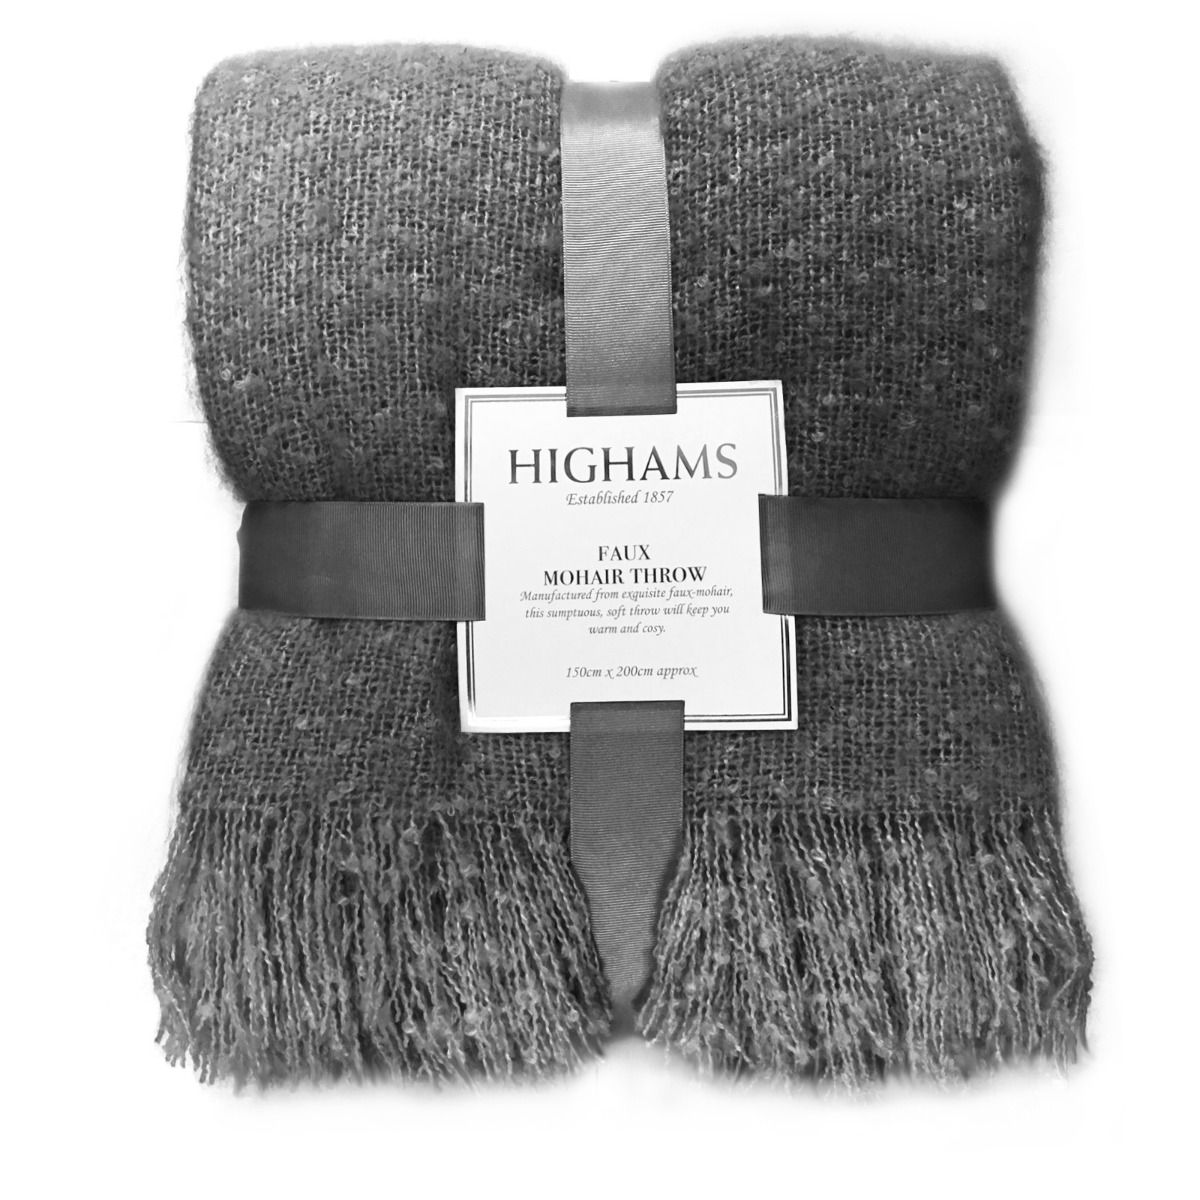 Highams Mohair Throw, Charcoal Grey - 150 x 200cm